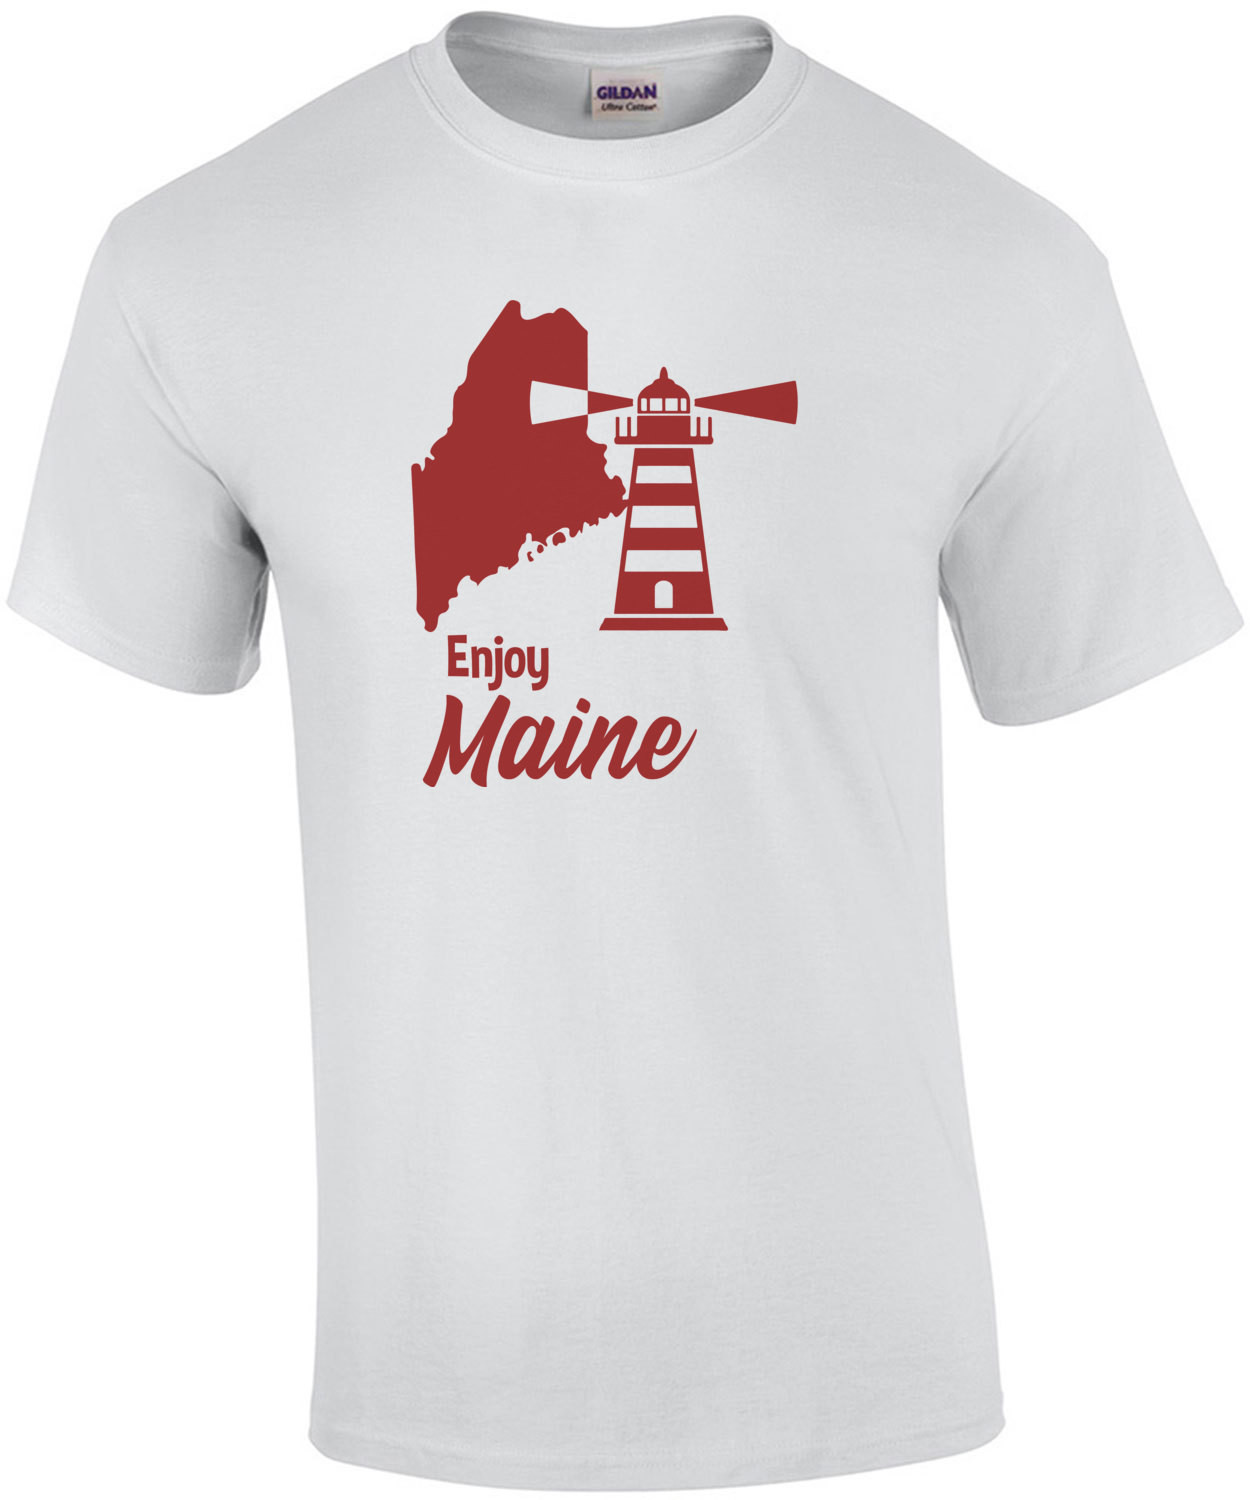 Enjoy Maine - Maine T-Shirt